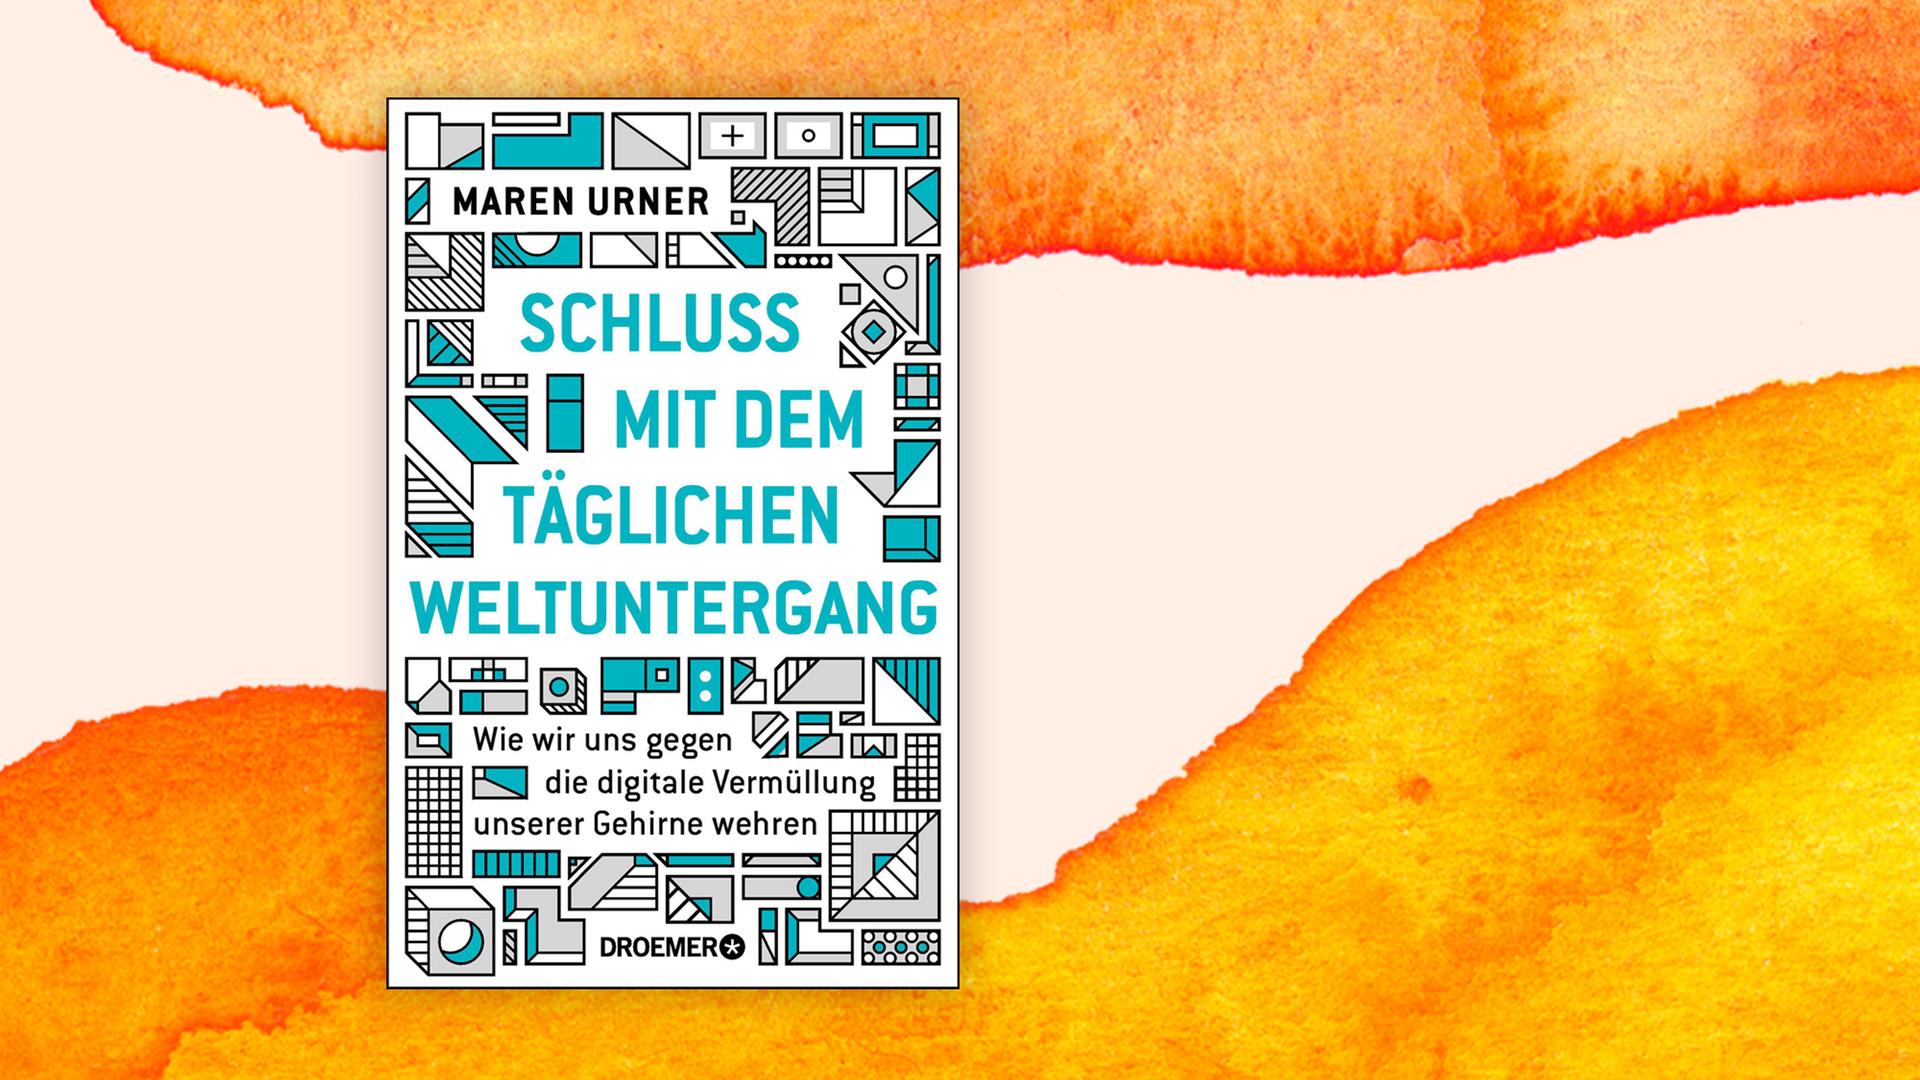 Buchcover zu "Schluss mit dem täglichen Weltuntergang" von Maren Urner.